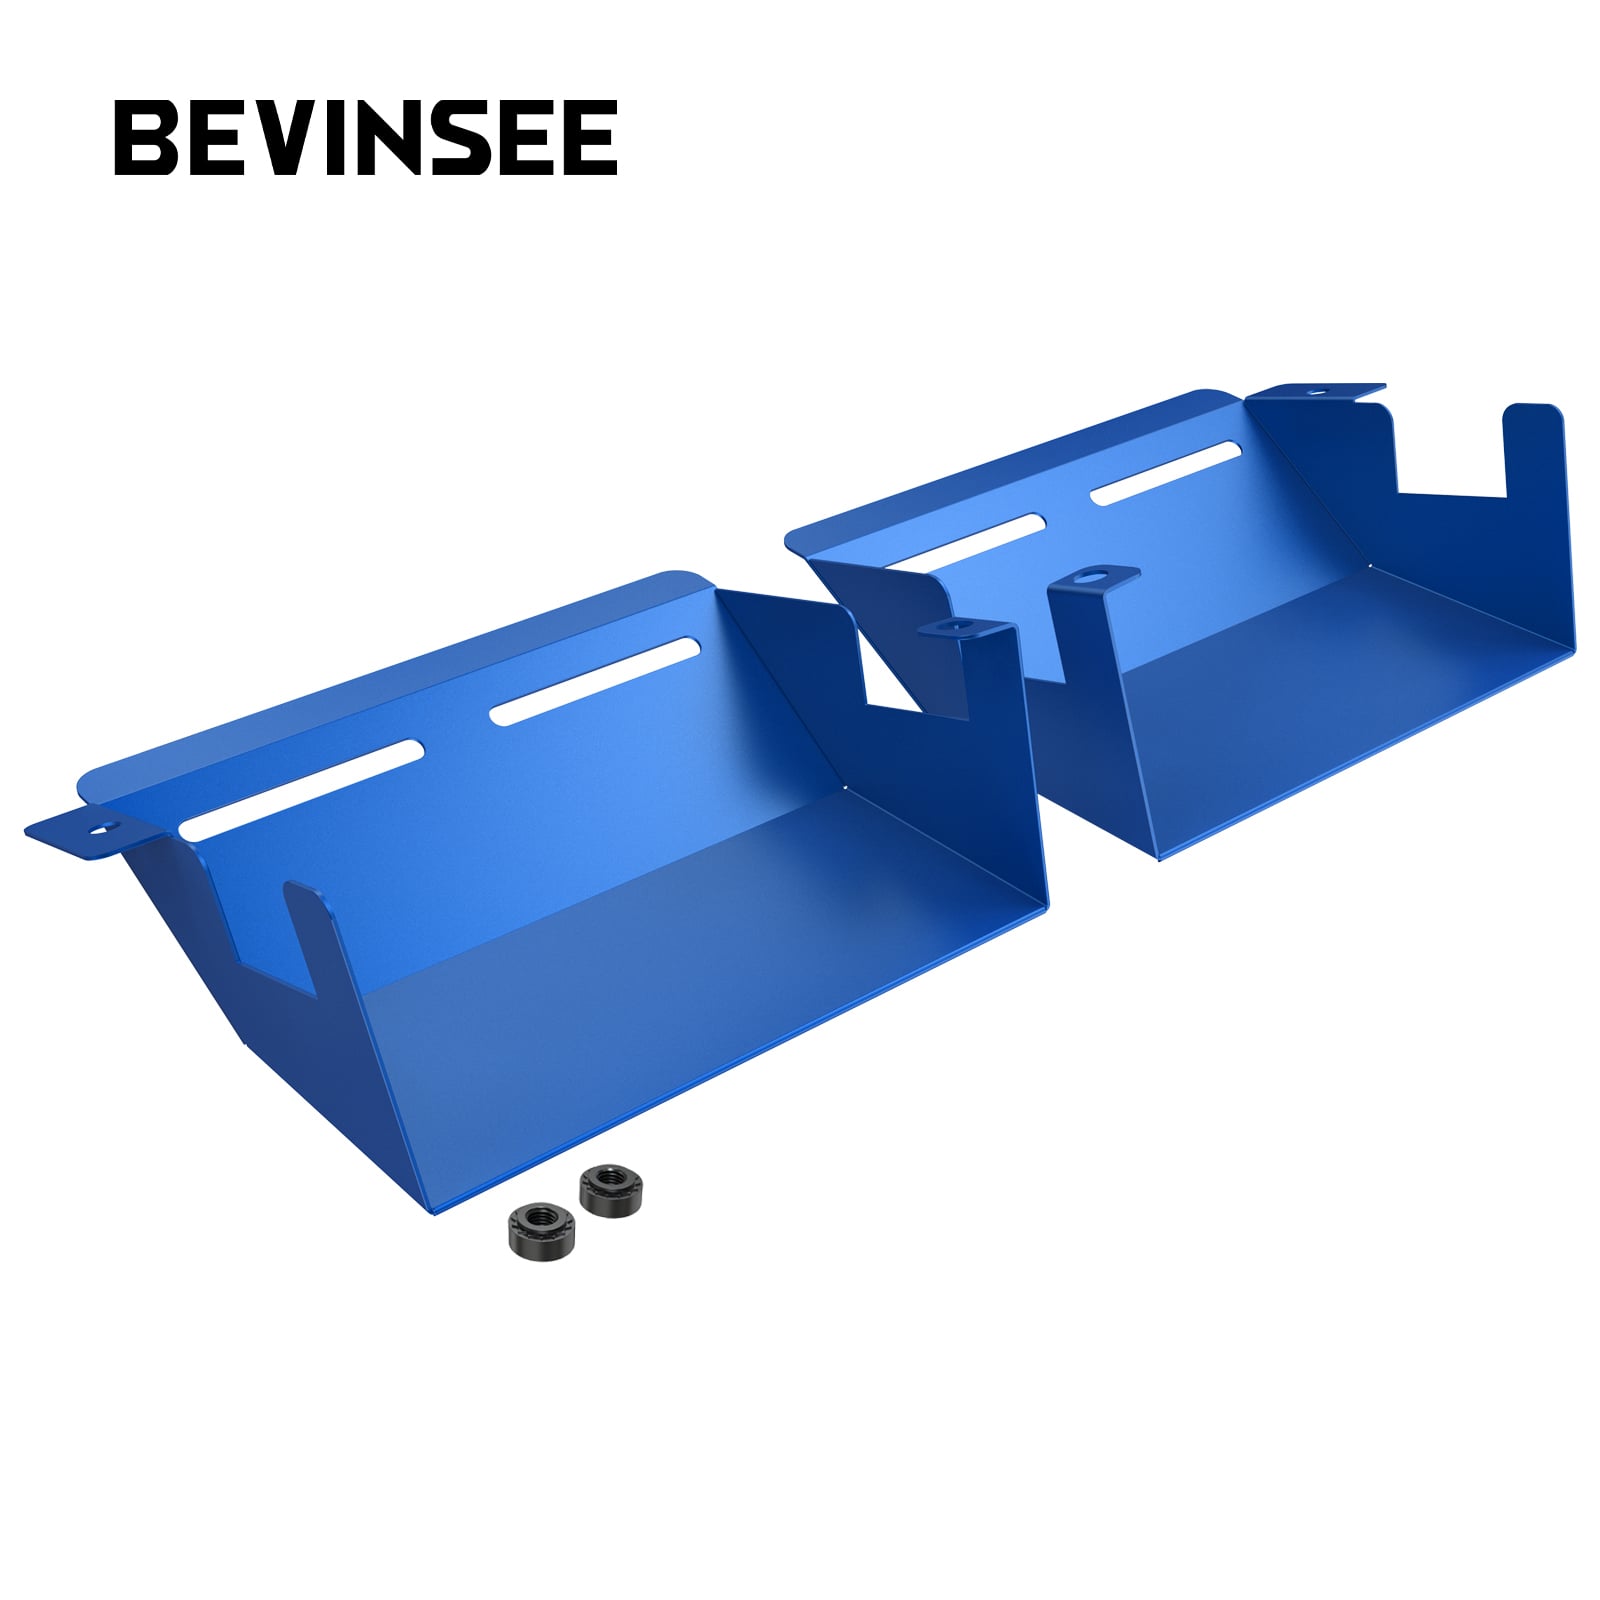 BEVINSEE Dynamic Air Intake Scoops for BMW E90 E92 335i 328i N54 N55